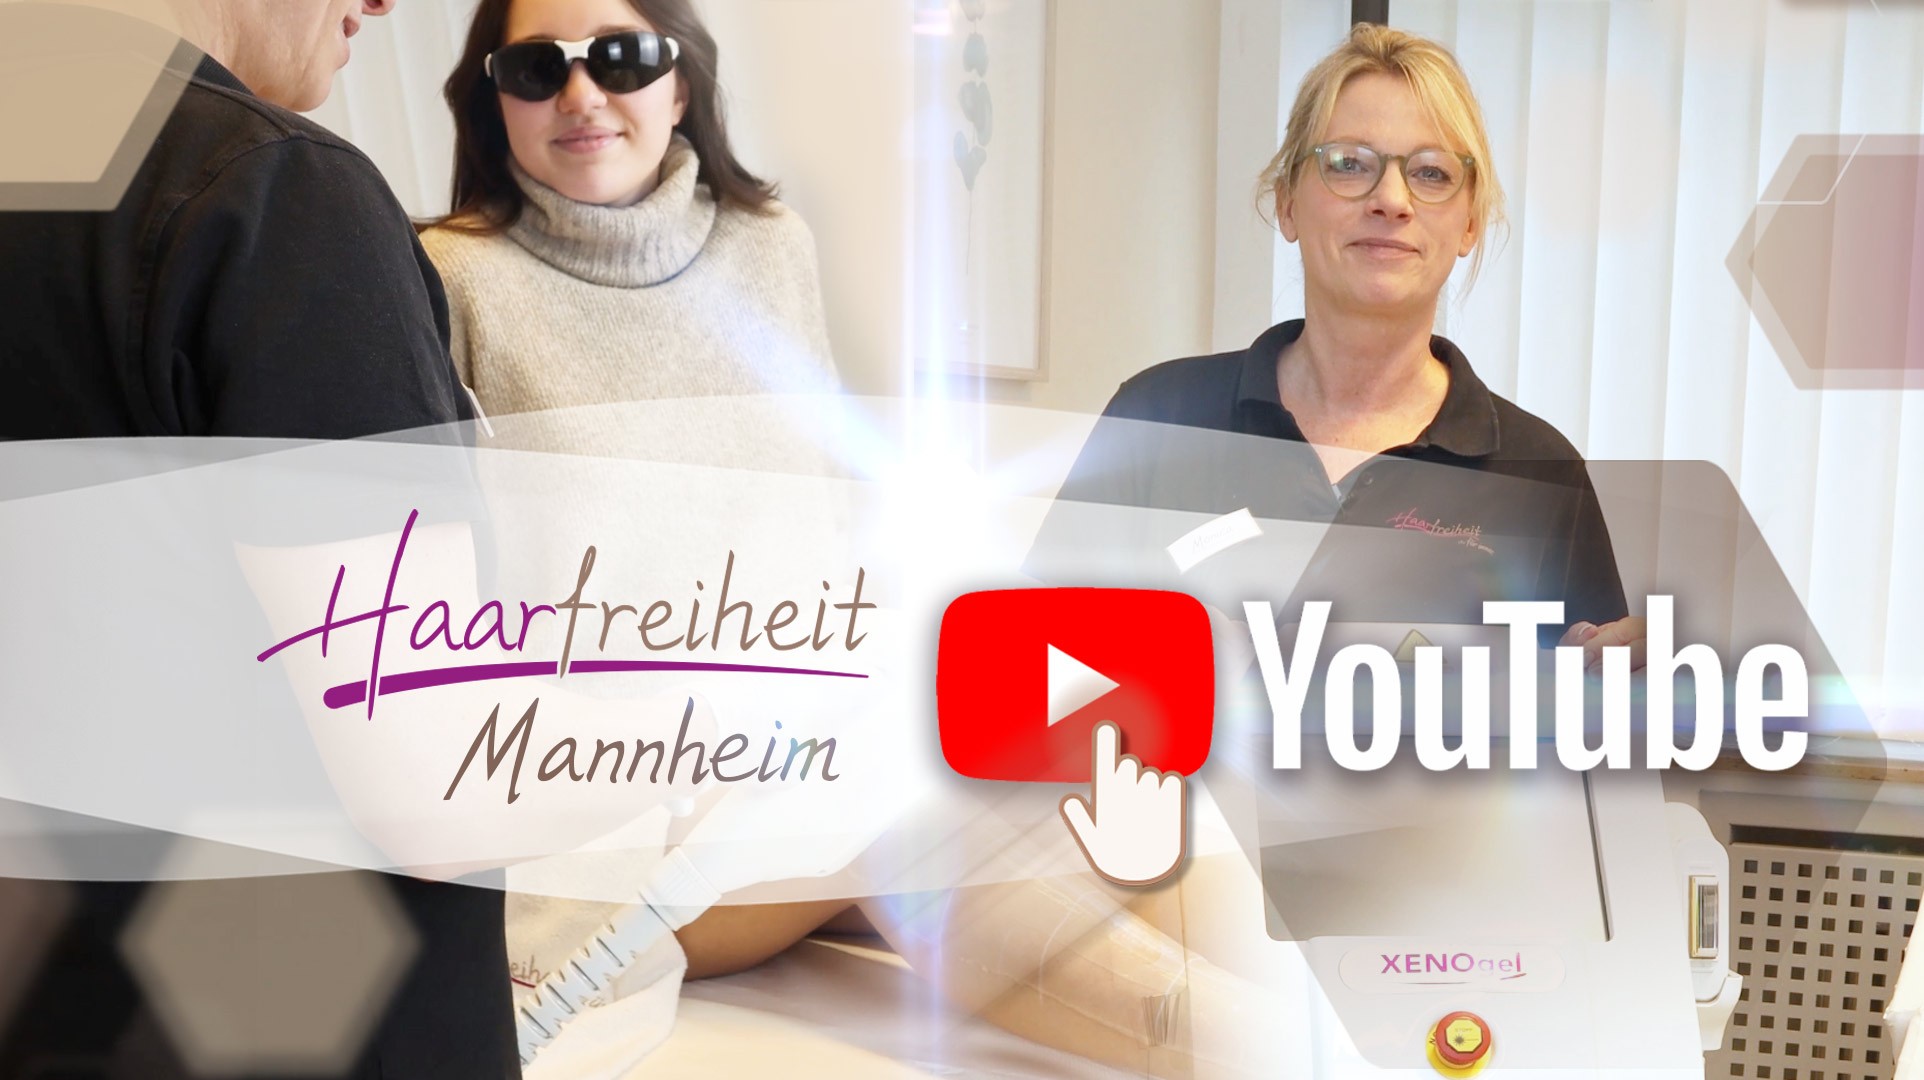 Youtube Link Haarfreiheit Mannheim Vorstellung